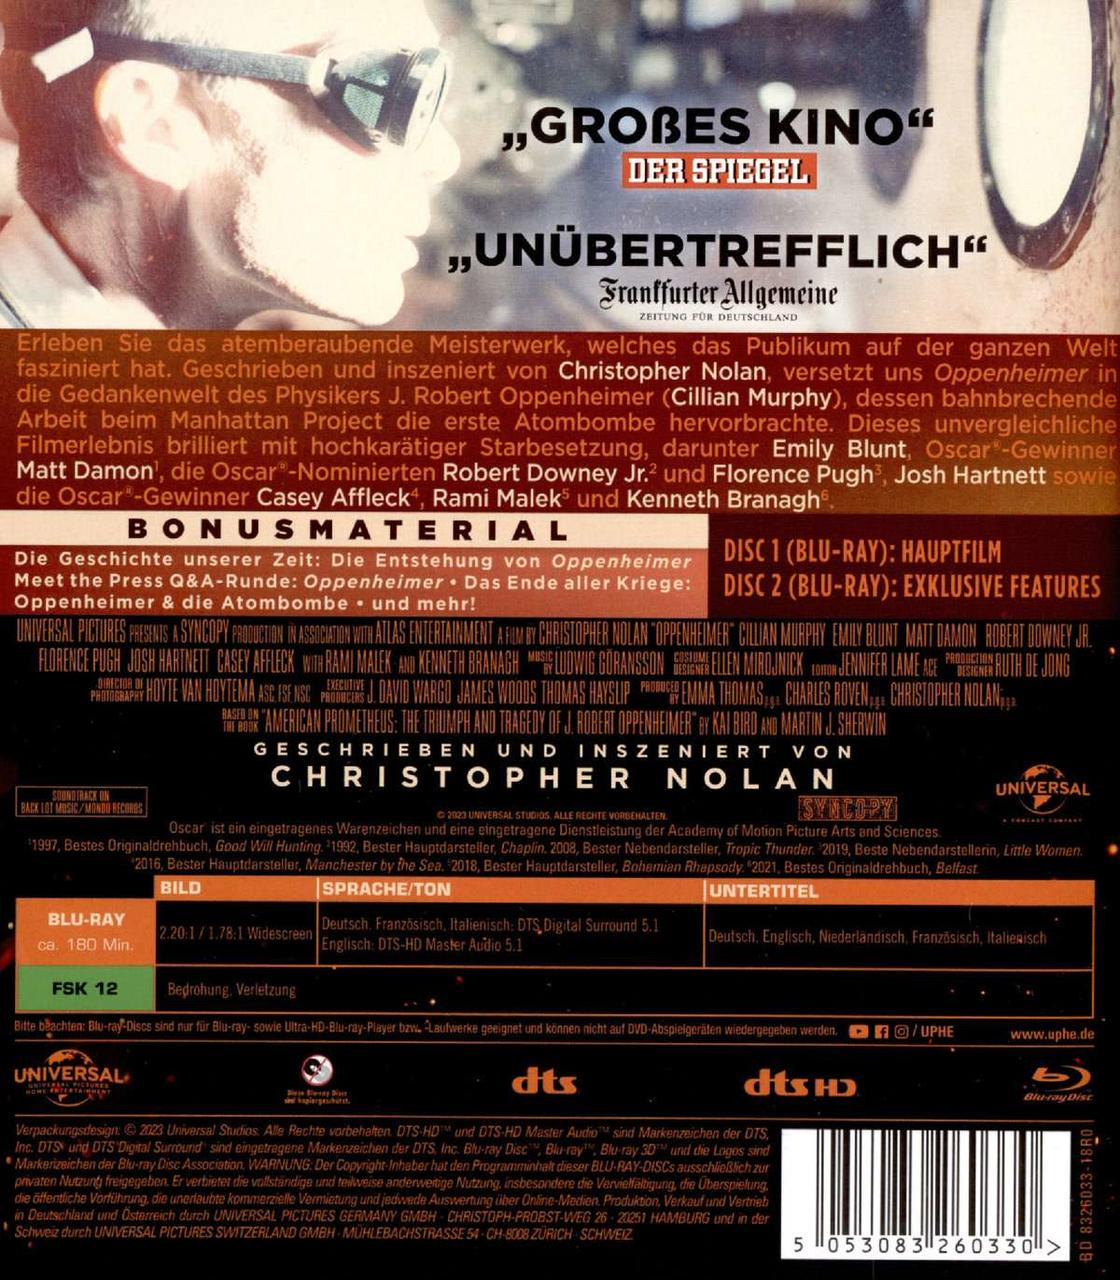 Oppenheimer Blu-ray